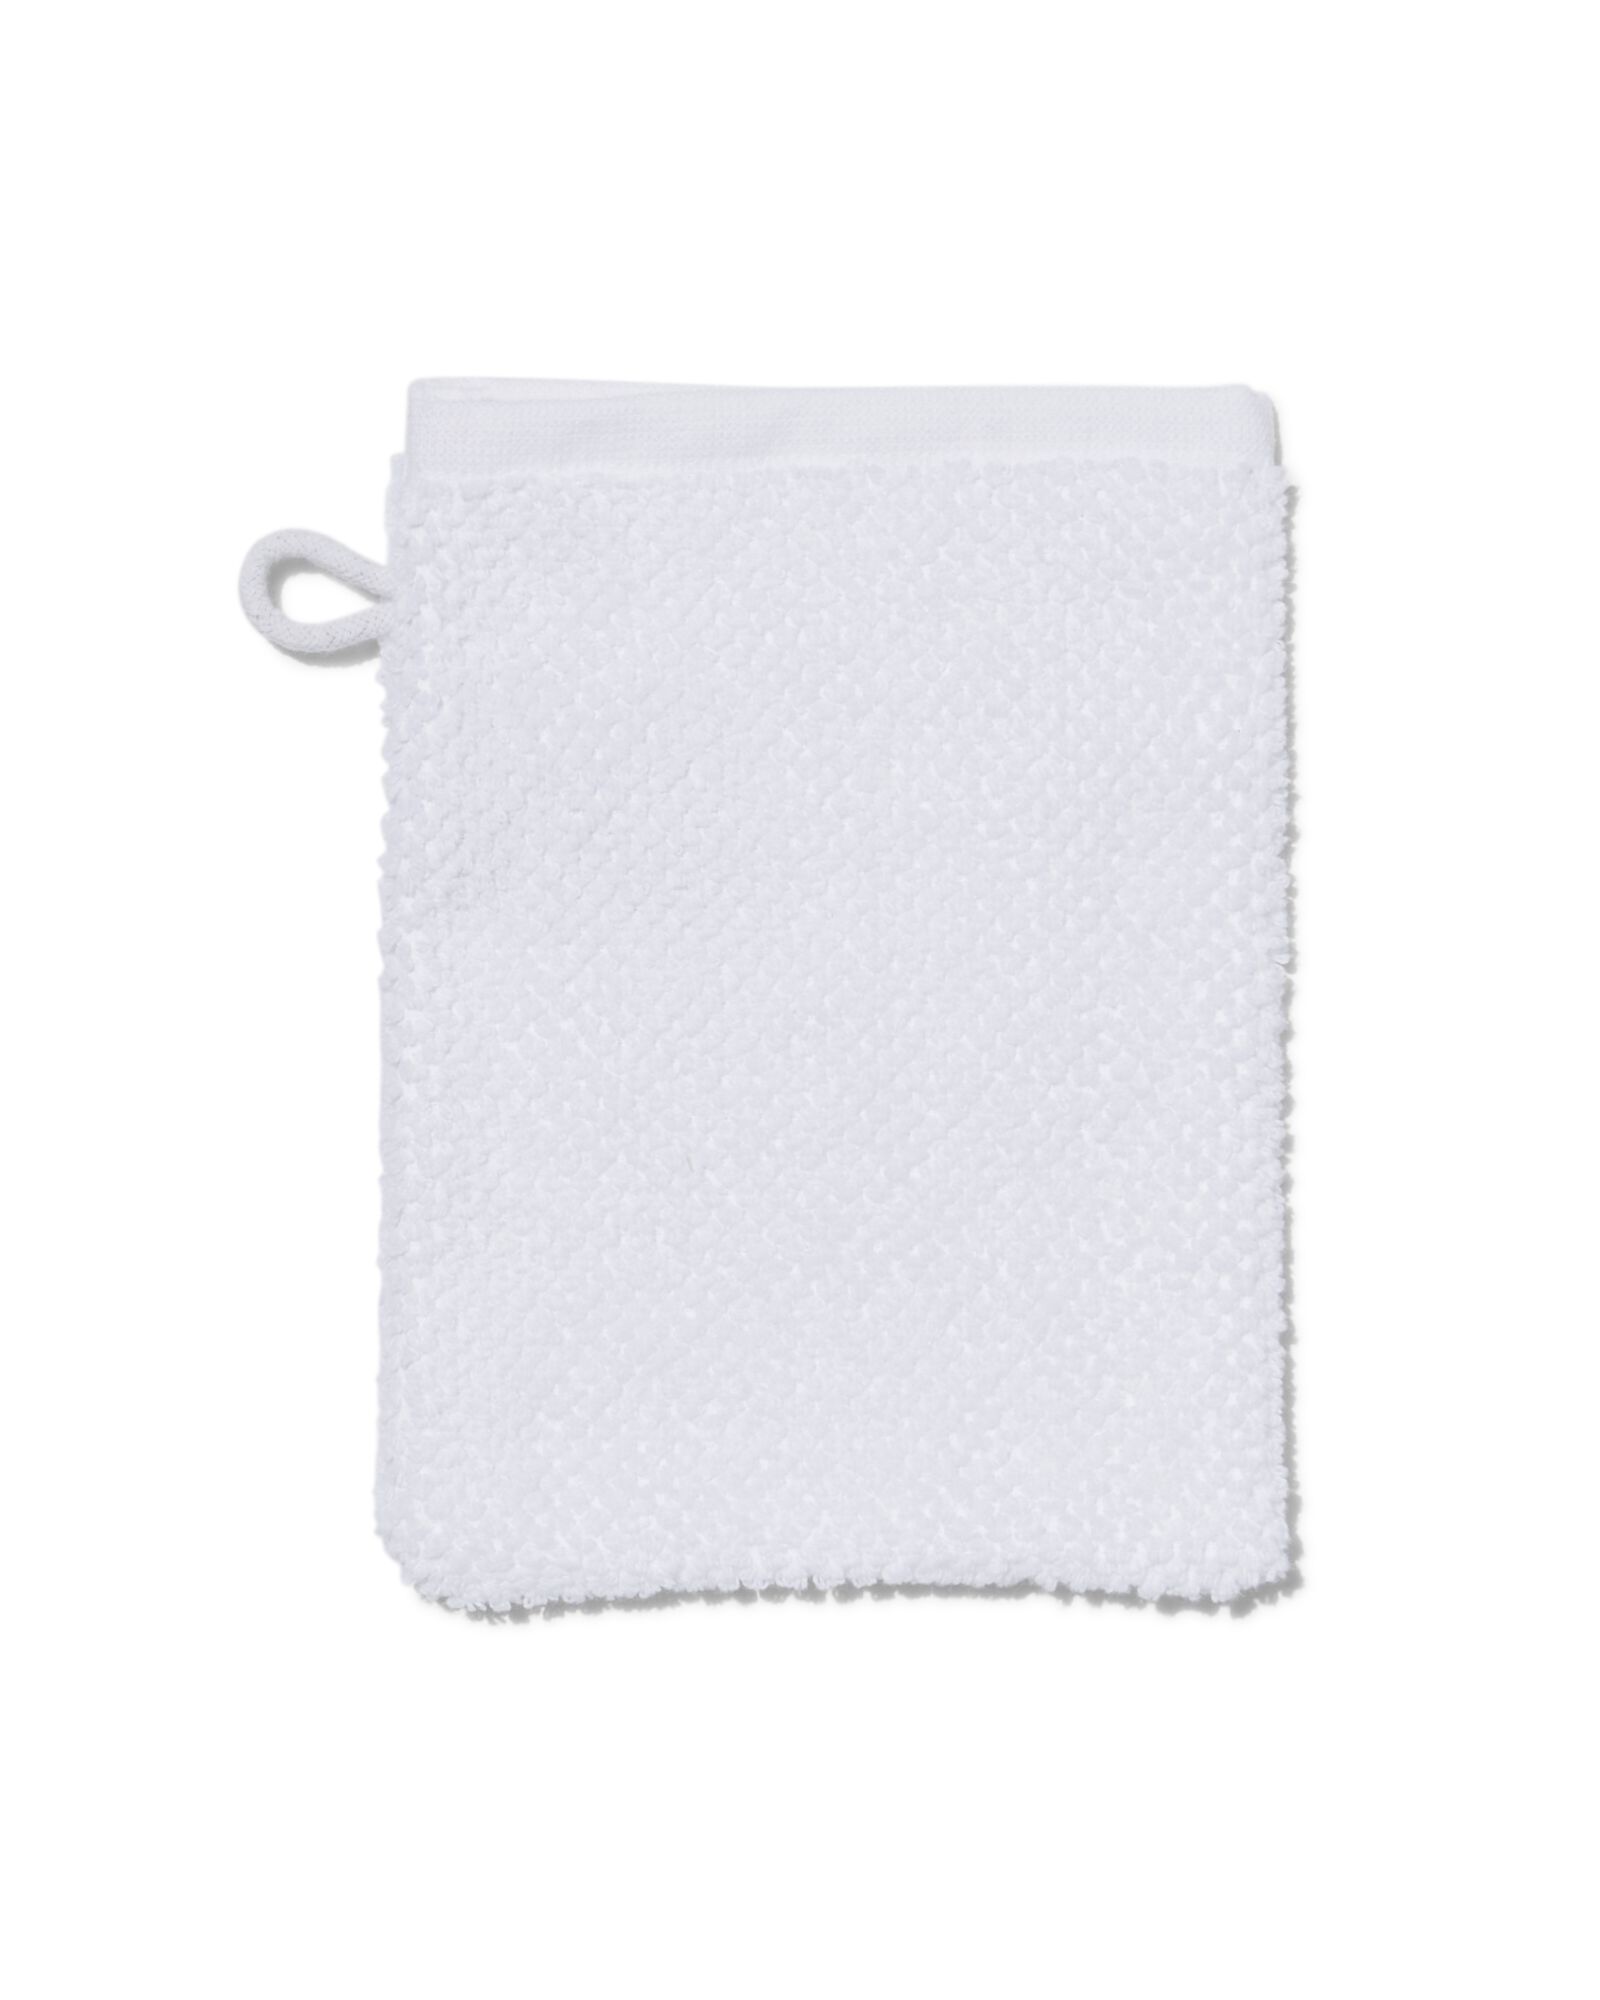 Waschhandschuh, recycelt, Baumwolle, 16 x 21 cm, weiß - 5240208 - HEMA